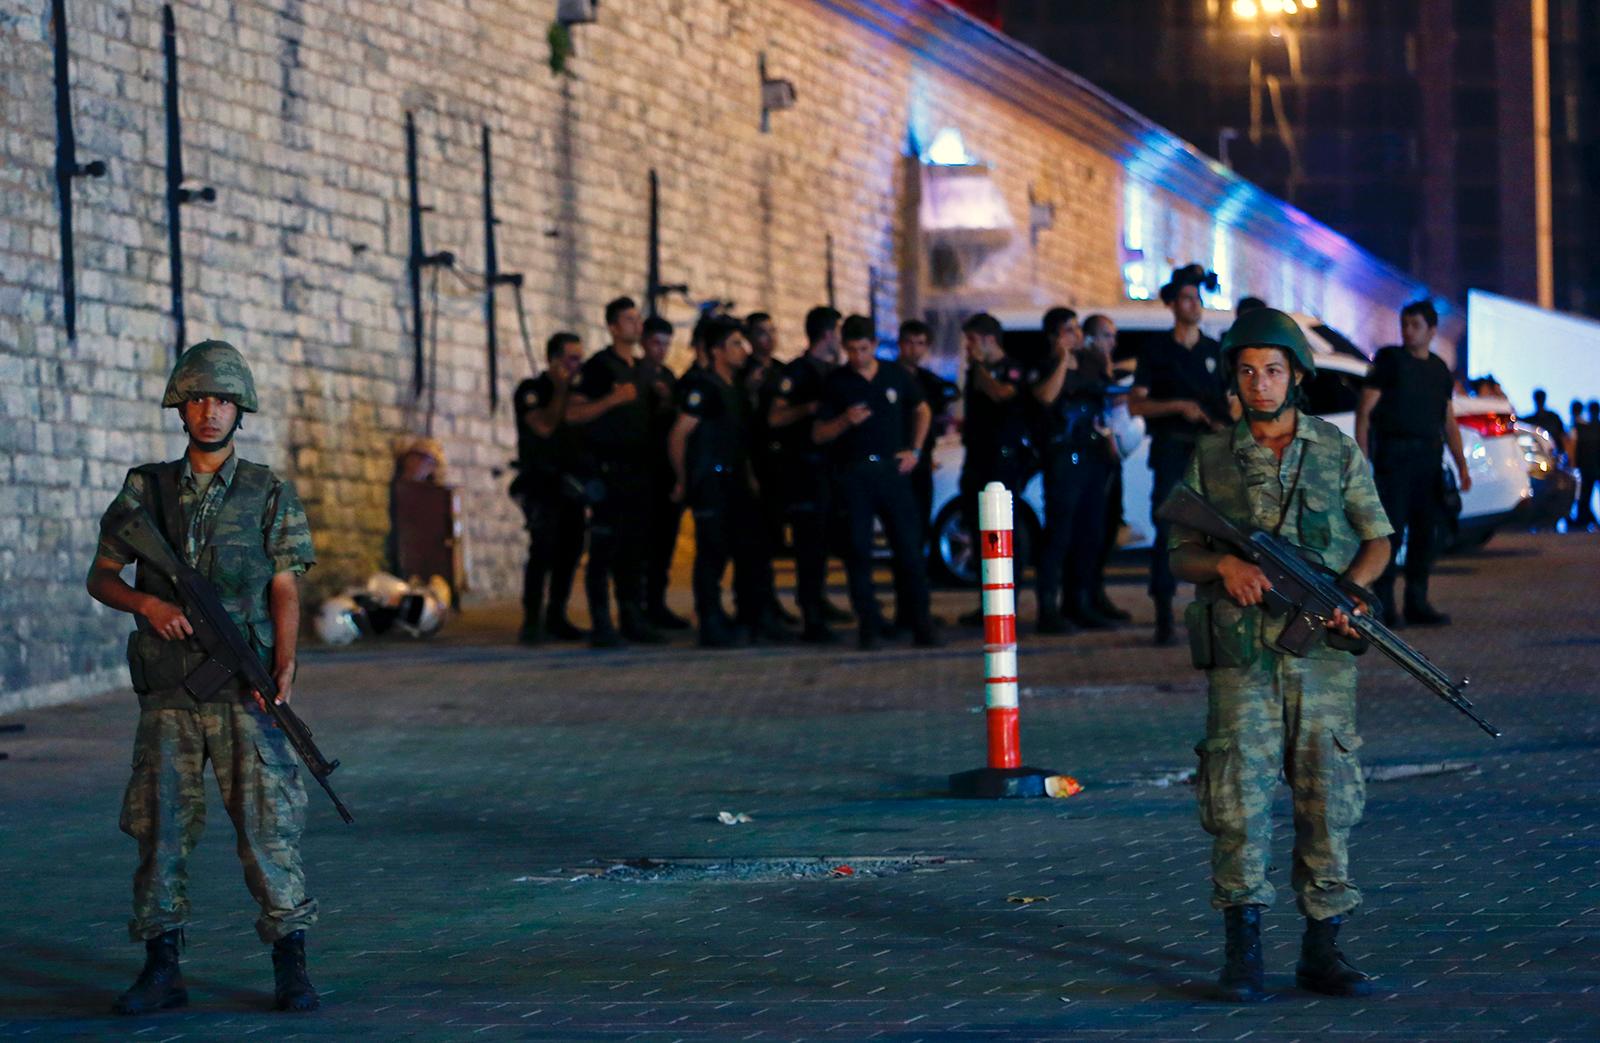 Militär står vakt vid Taksimtorget i Istanbul, ett stort antal poliser hålls innanför avspärrningarna av oklar anledning.